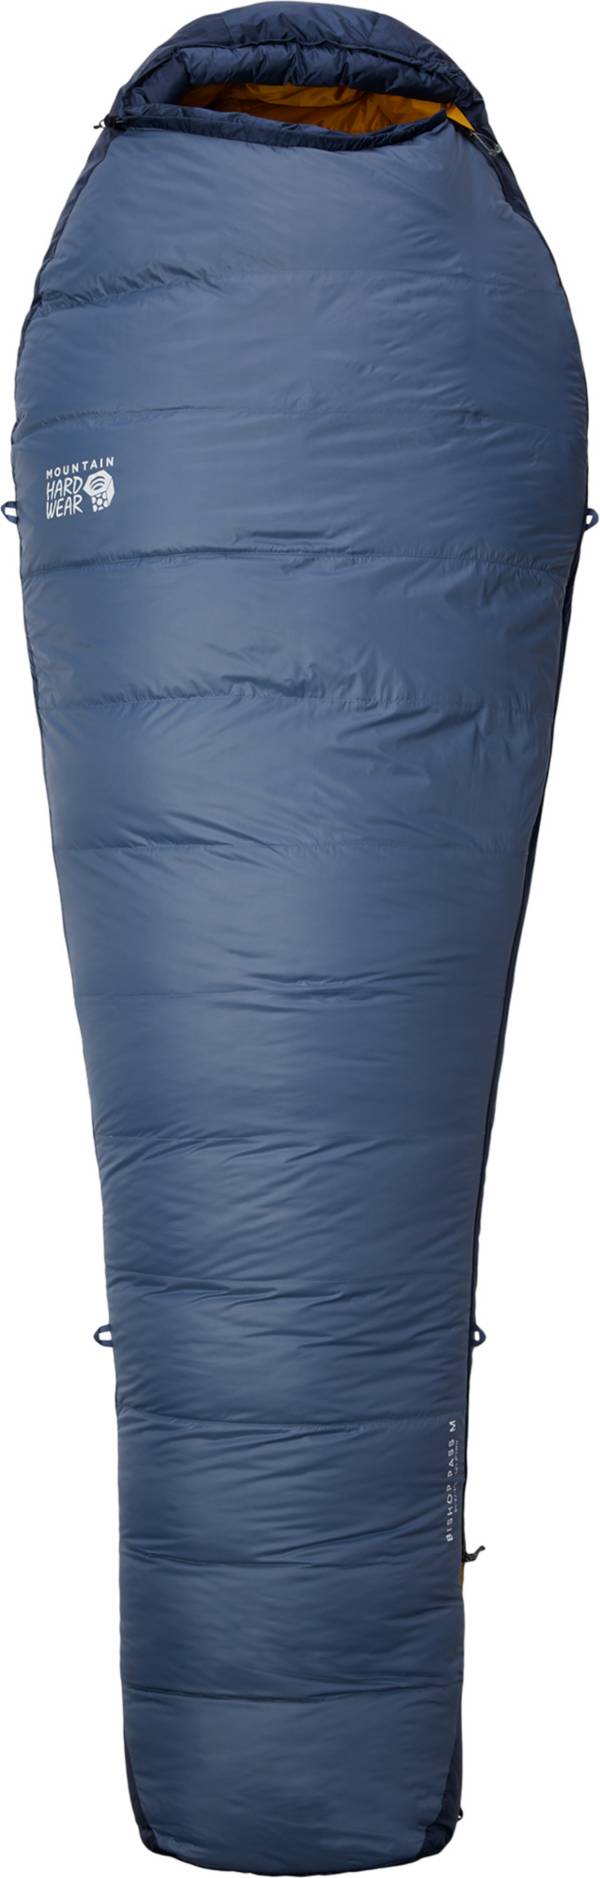 Mountain Hardwear Men's Bishop Pass 30°F Sleeping Bag product image